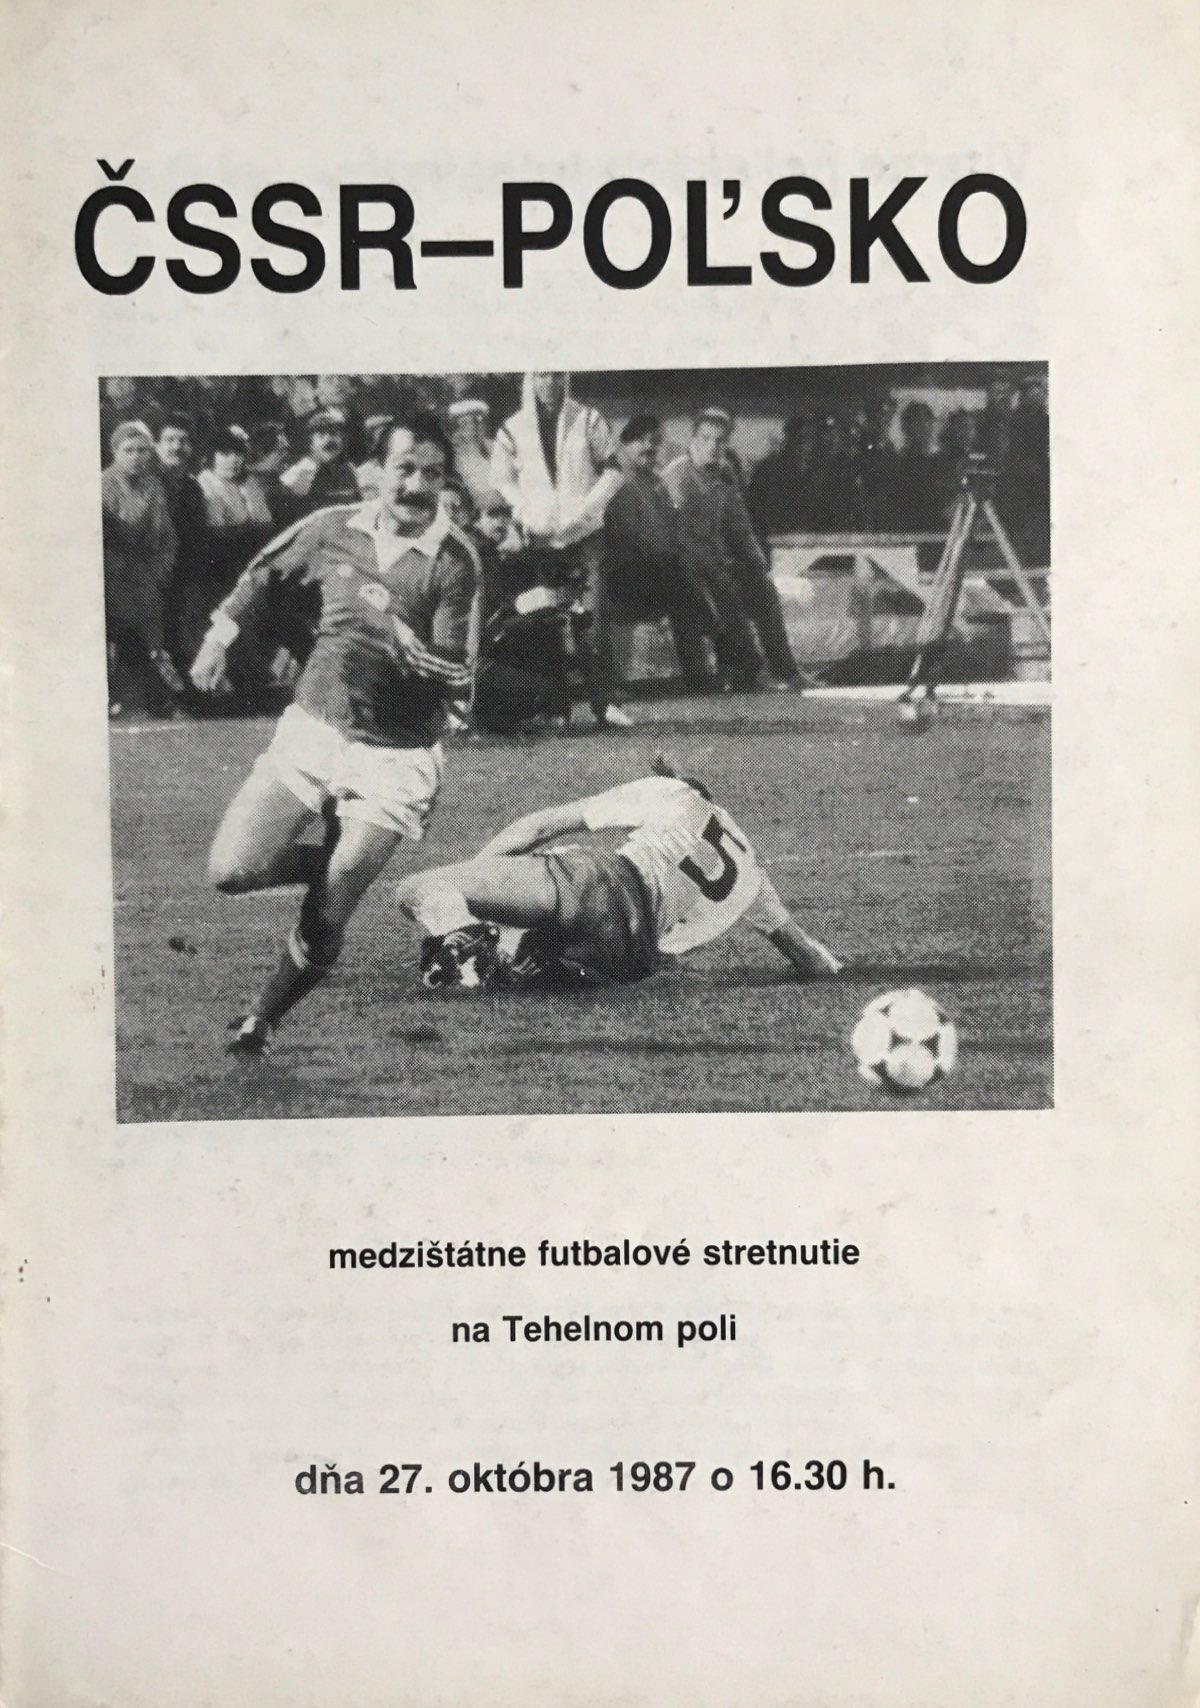 Program meczowy Czechosłowacja - Polska 3:1 (27.10.1987)